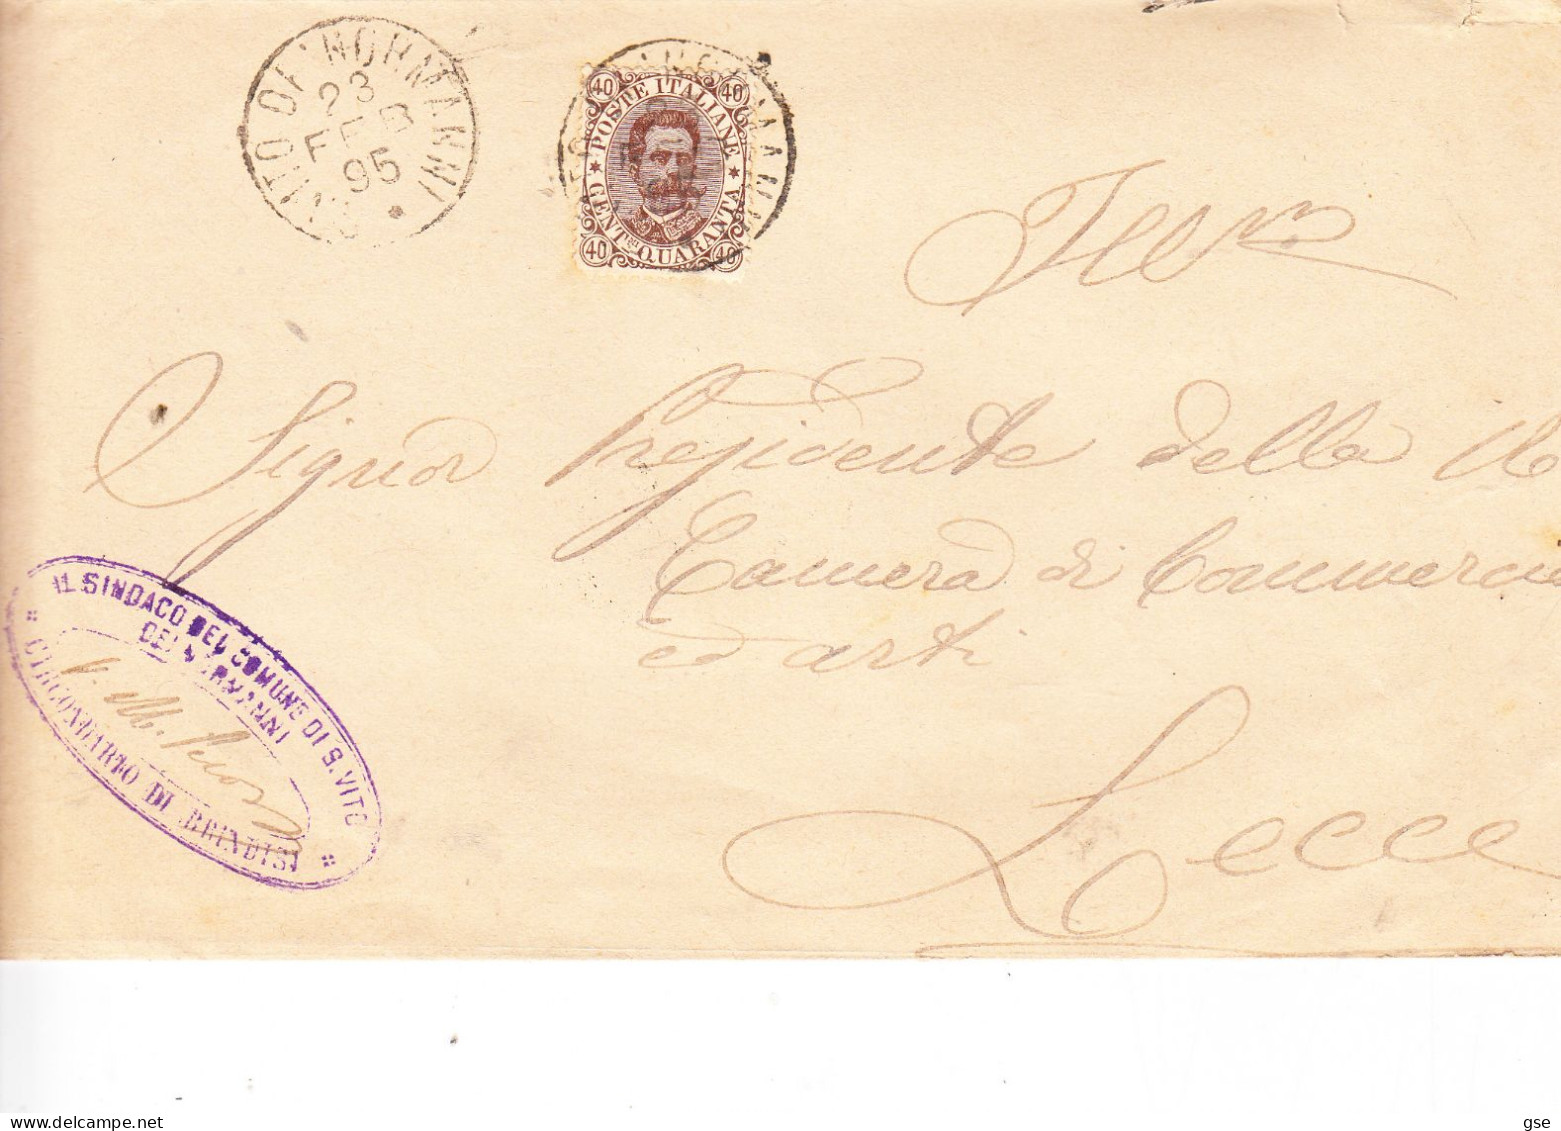 ITALIA   1885 -- Lettera (senza Testo) Da S.Vito Dei Normanni A Lecce - Marcophilia